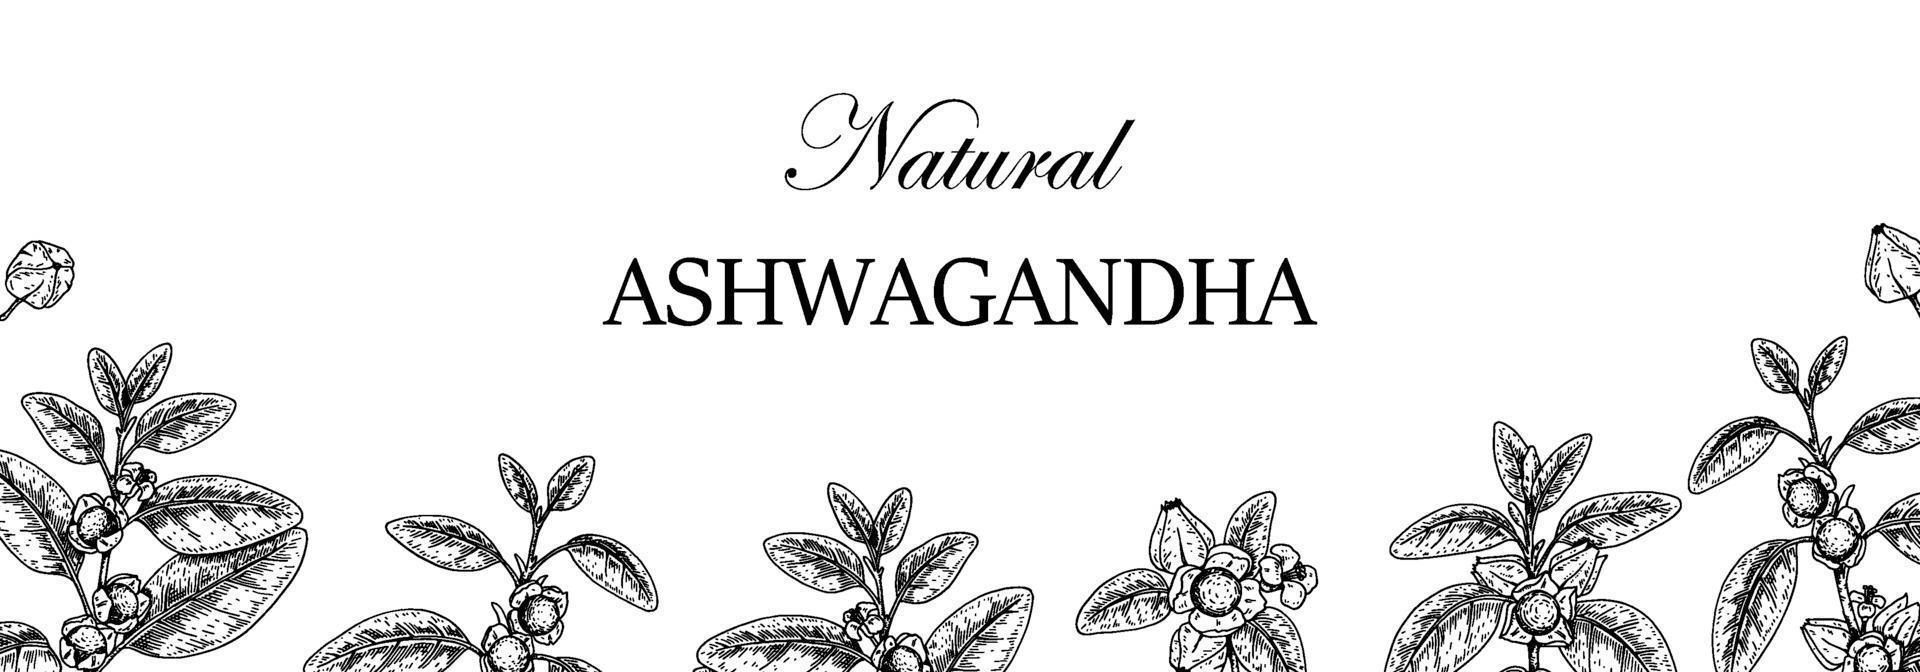 design ashwagandha horizontal dessiné à la main avec des branches et des baies isolées sur fond blanc. illustration vectorielle dans le style de croquis. vecteur